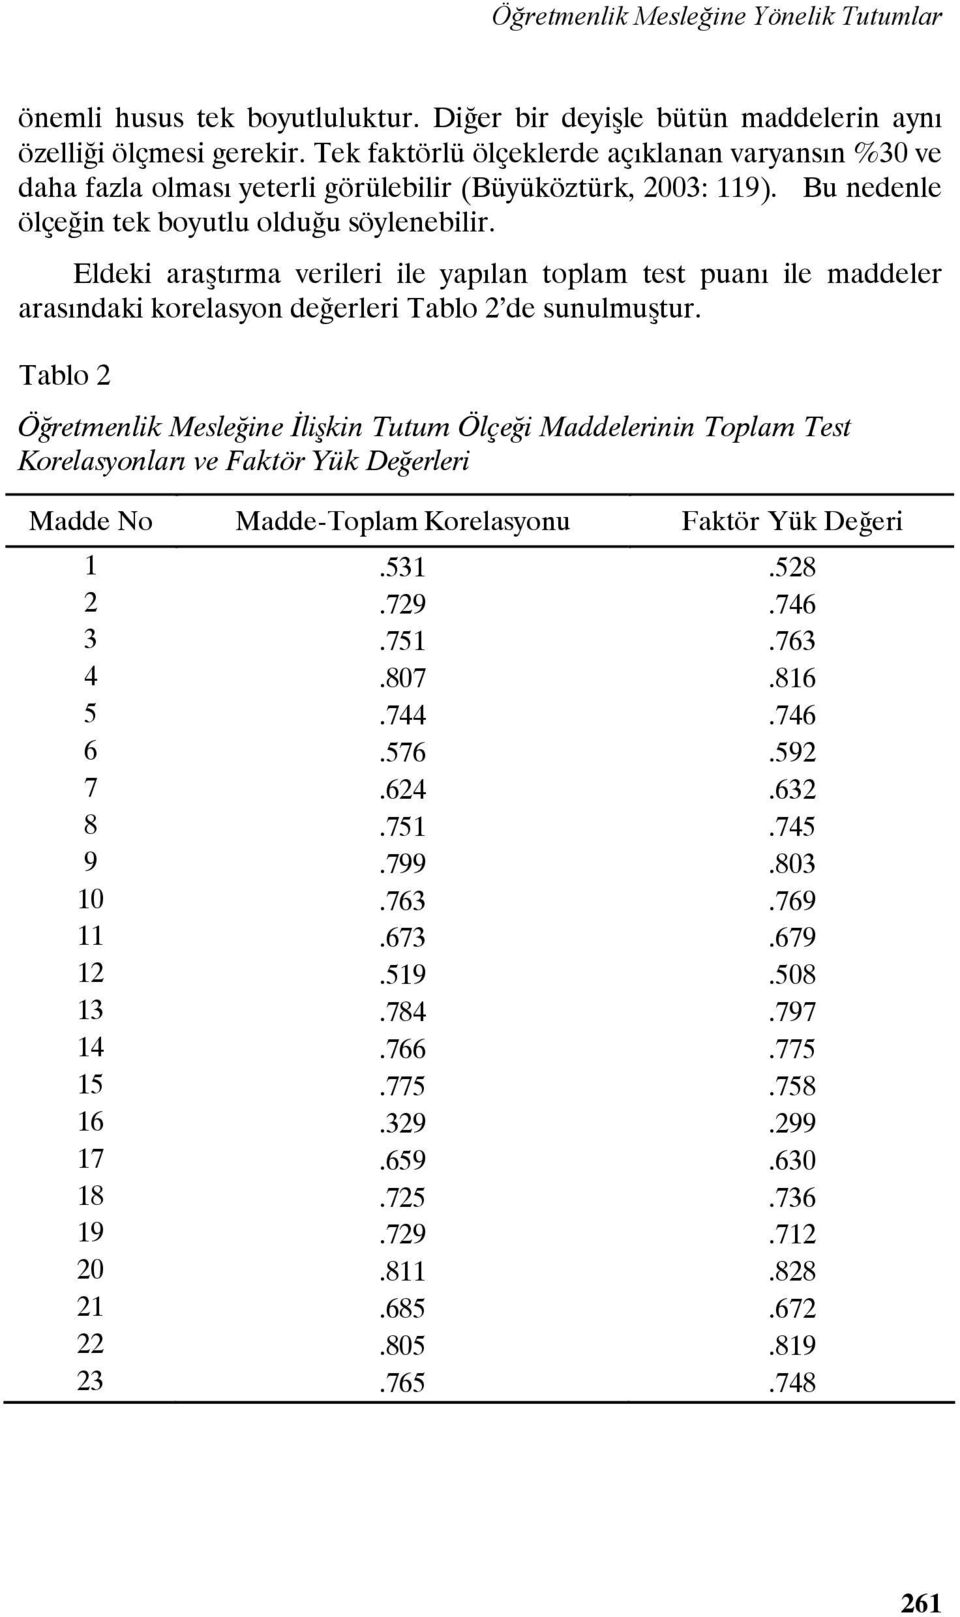 Eldeki araştırma verileri ile yapılan toplam test puanı ile maddeler arasındaki korelasyon değerleri Tablo 2 de sunulmuştur.